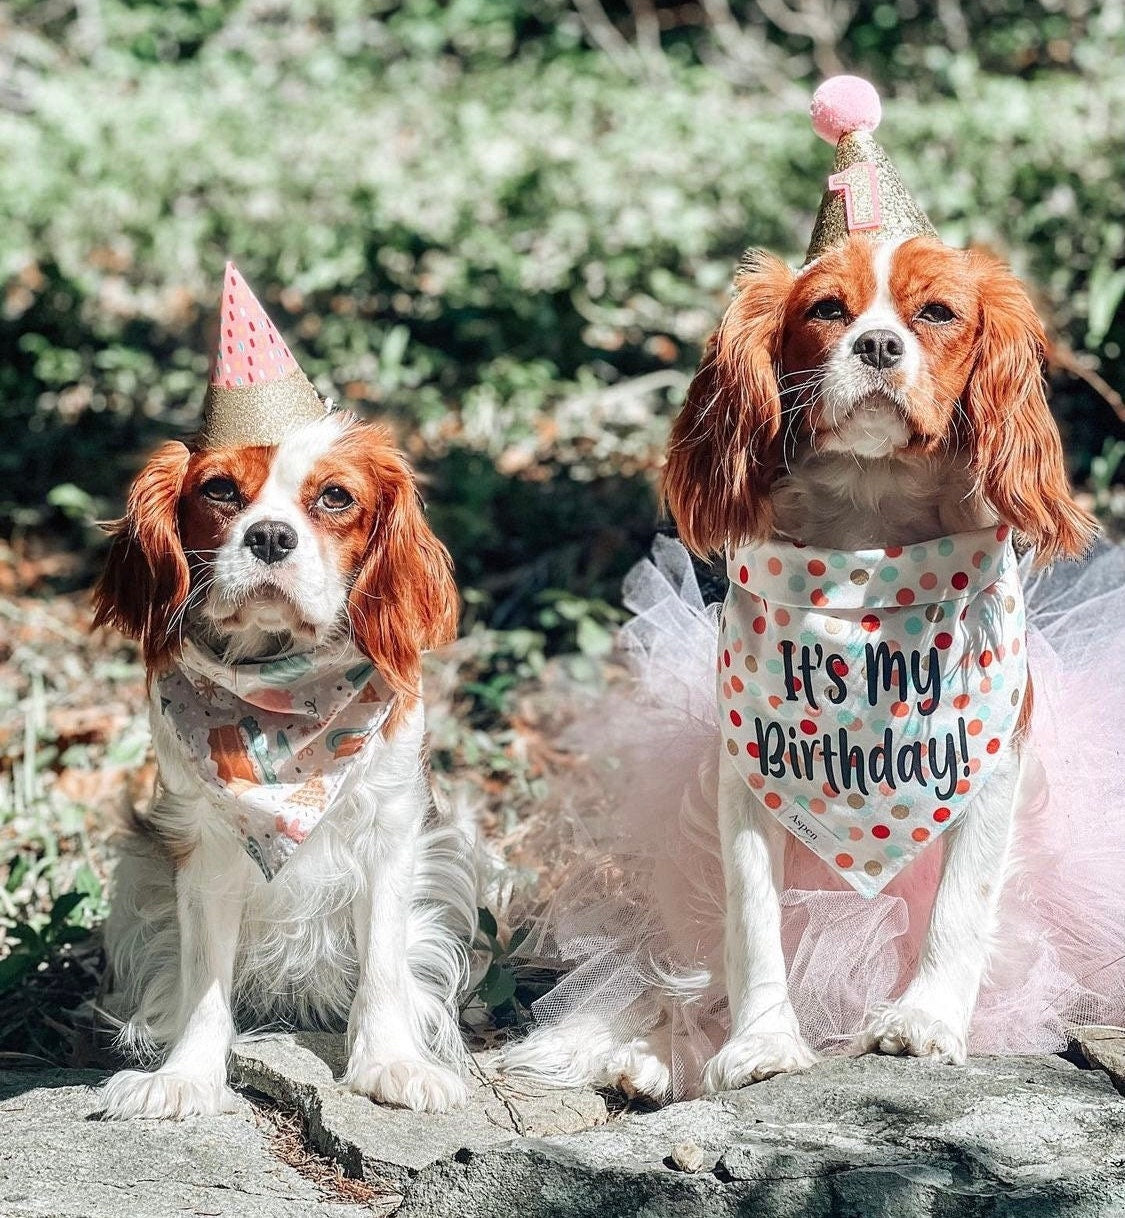 Birthday Dog Bandana - It's My Birthday